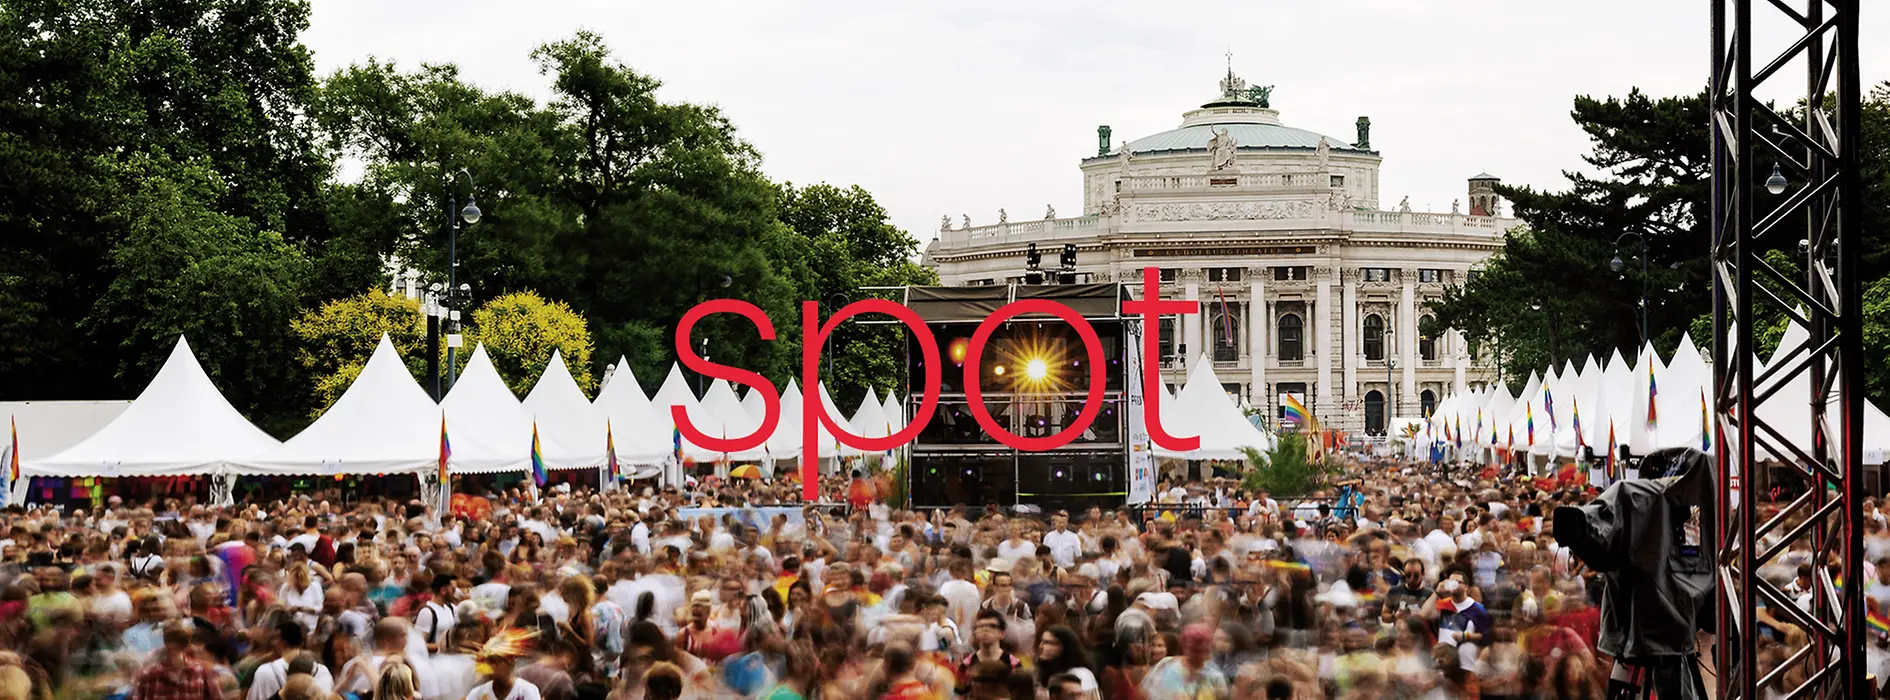 Al centro dell'immagine è scritto a grandi lettere rosse il nome della brochure dell'evento; l'immagine mostra un evento davanti al Burgtheater.